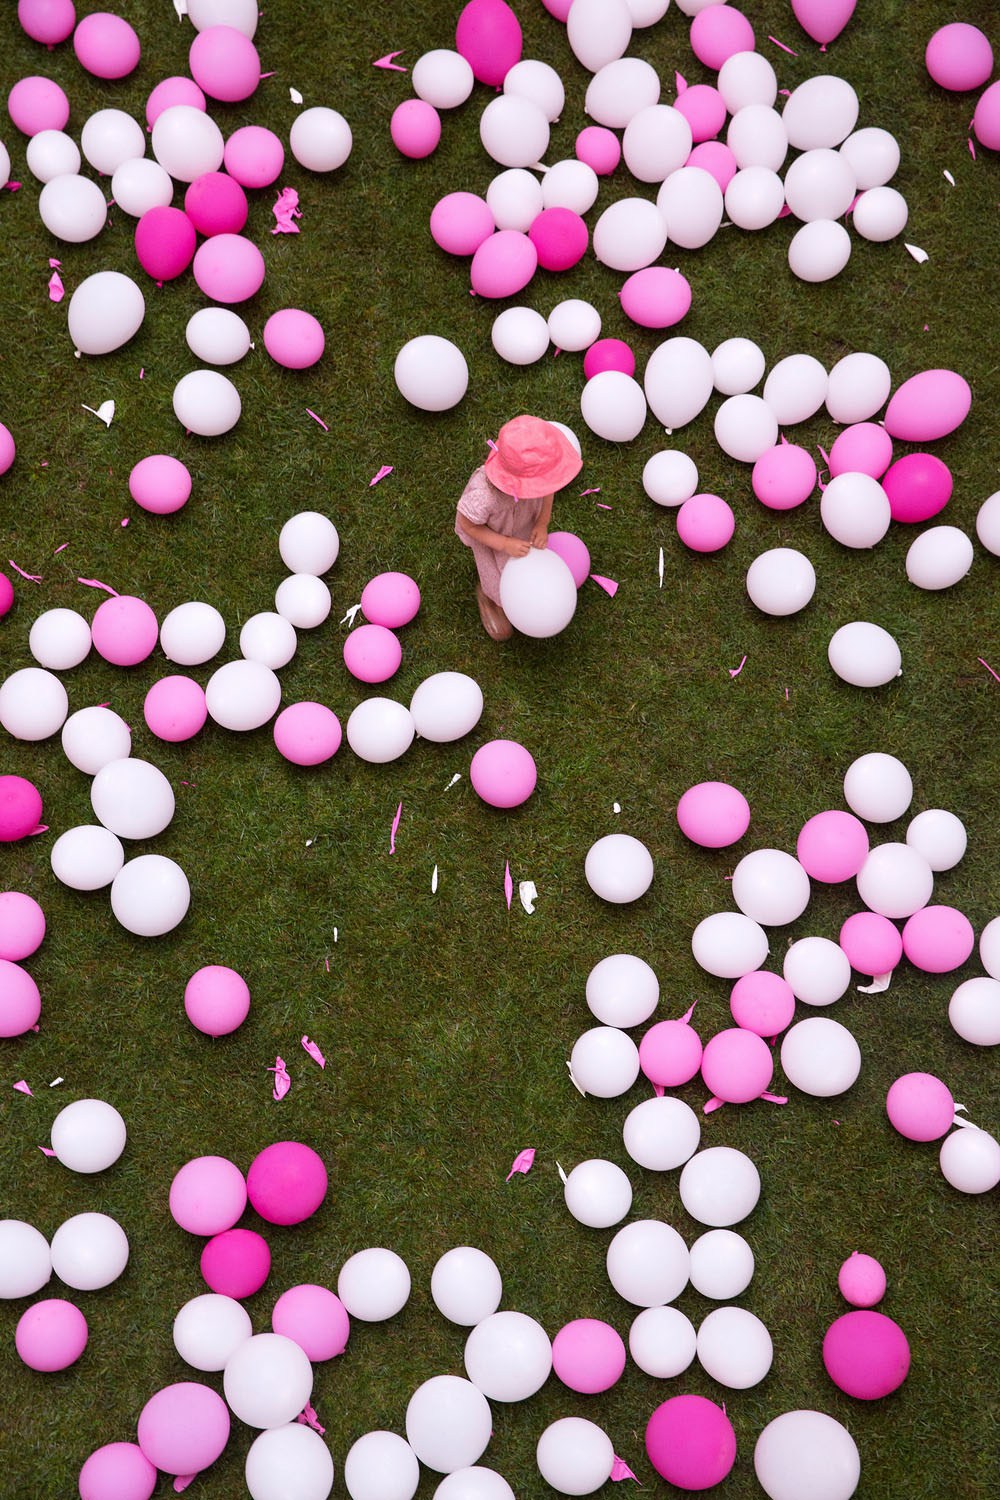 pinkballoons6